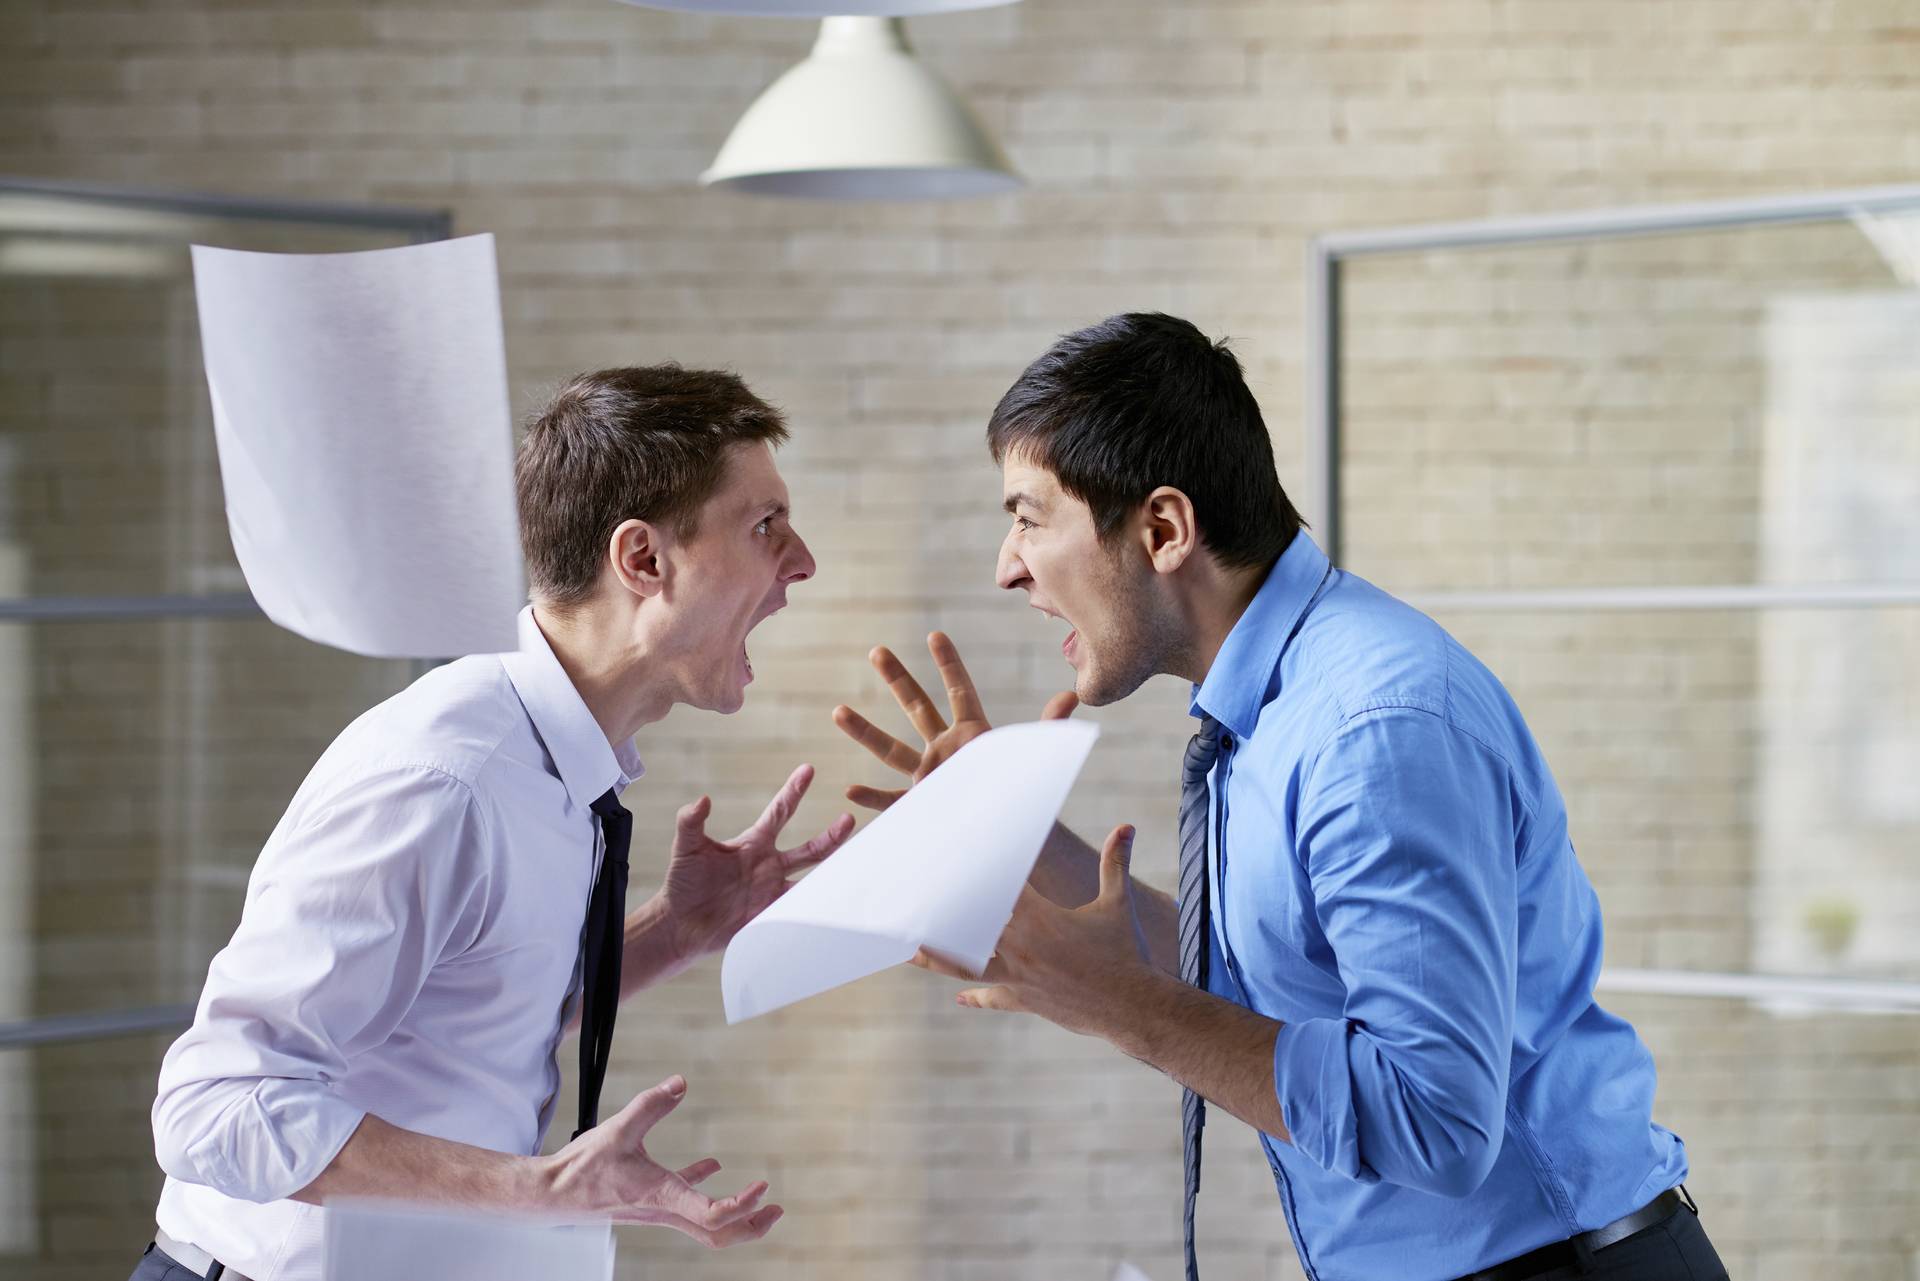 Отношения с коллегами на работе: как правильно общаться и наладить связи?